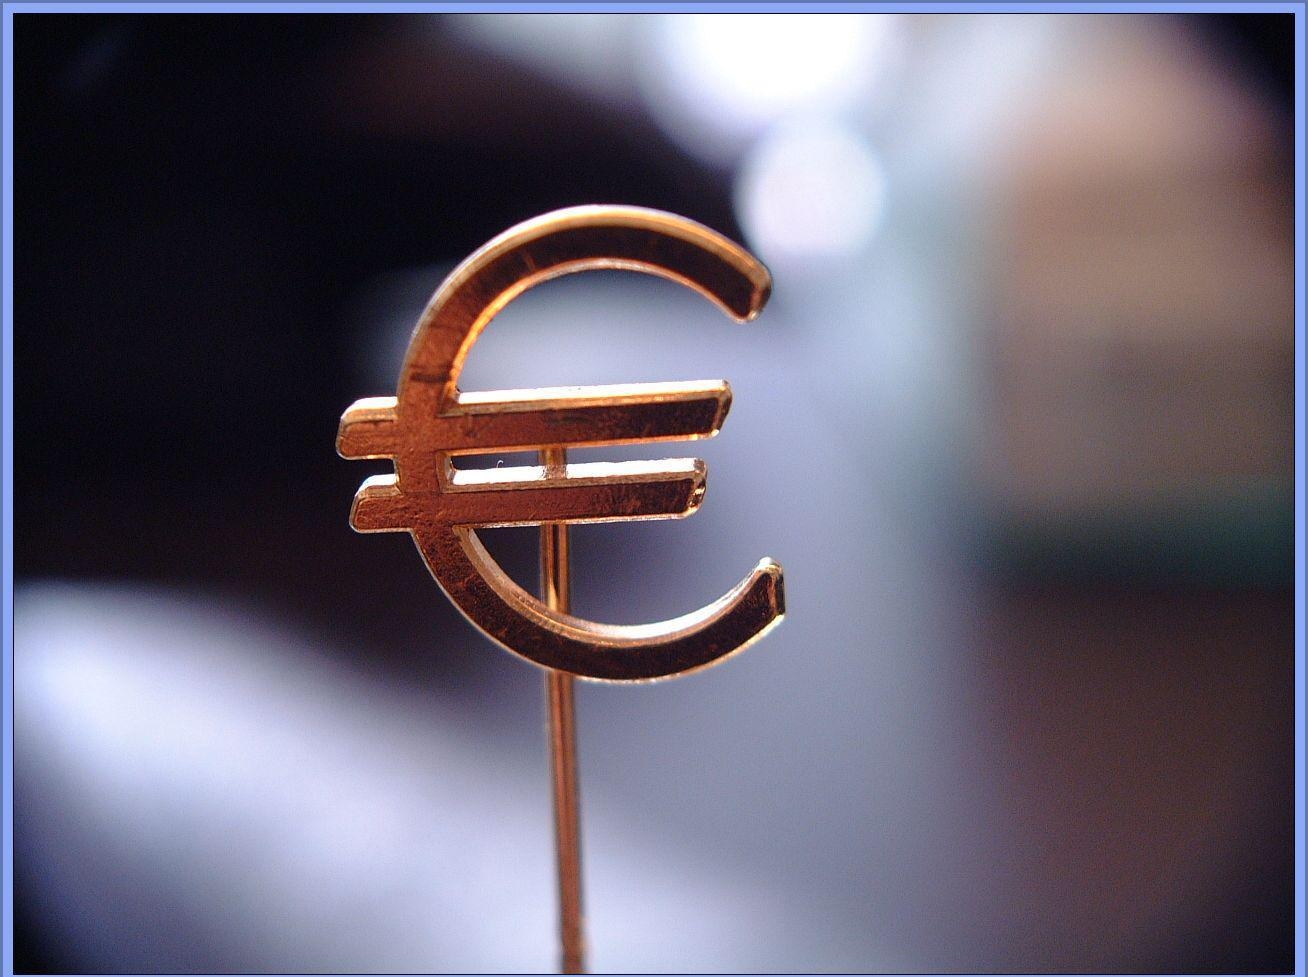 Евро - самая новая валюта в Европейской валютной системе